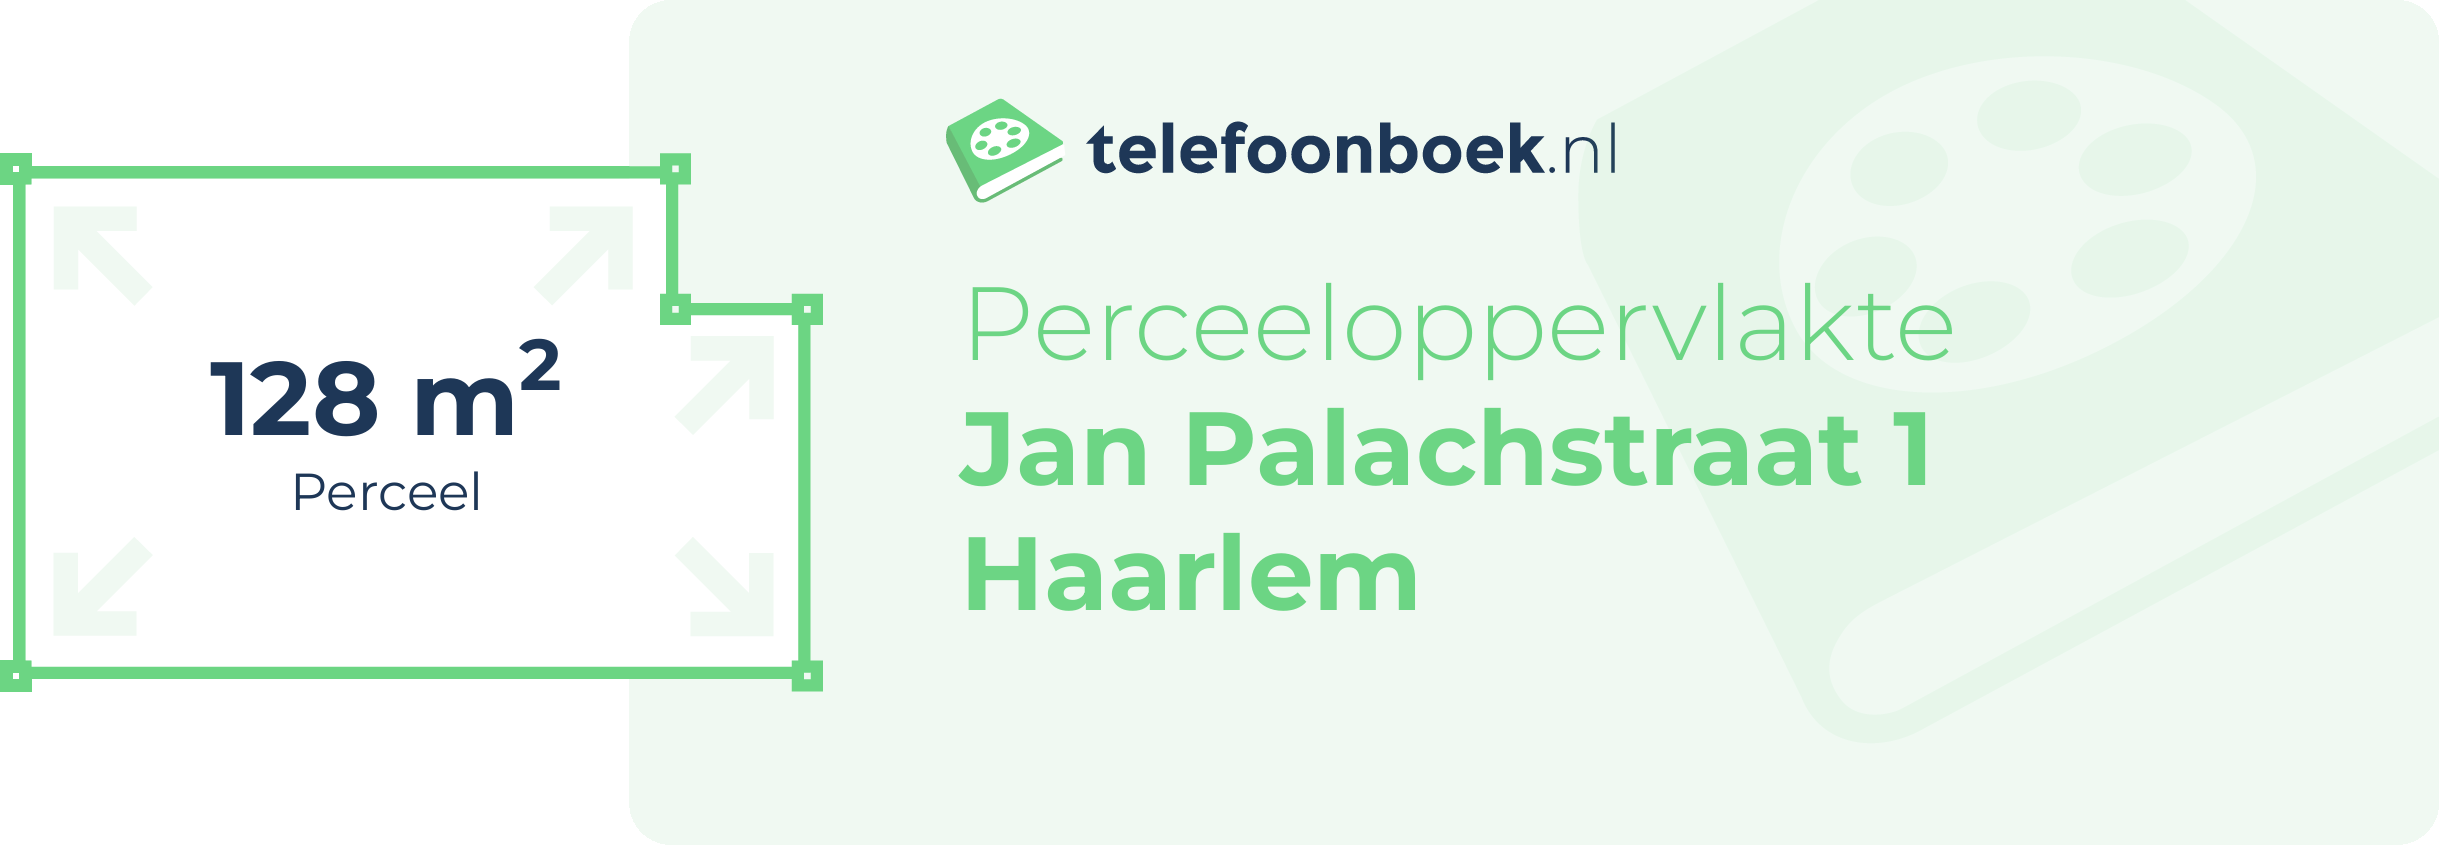 Perceeloppervlakte Jan Palachstraat 1 Haarlem